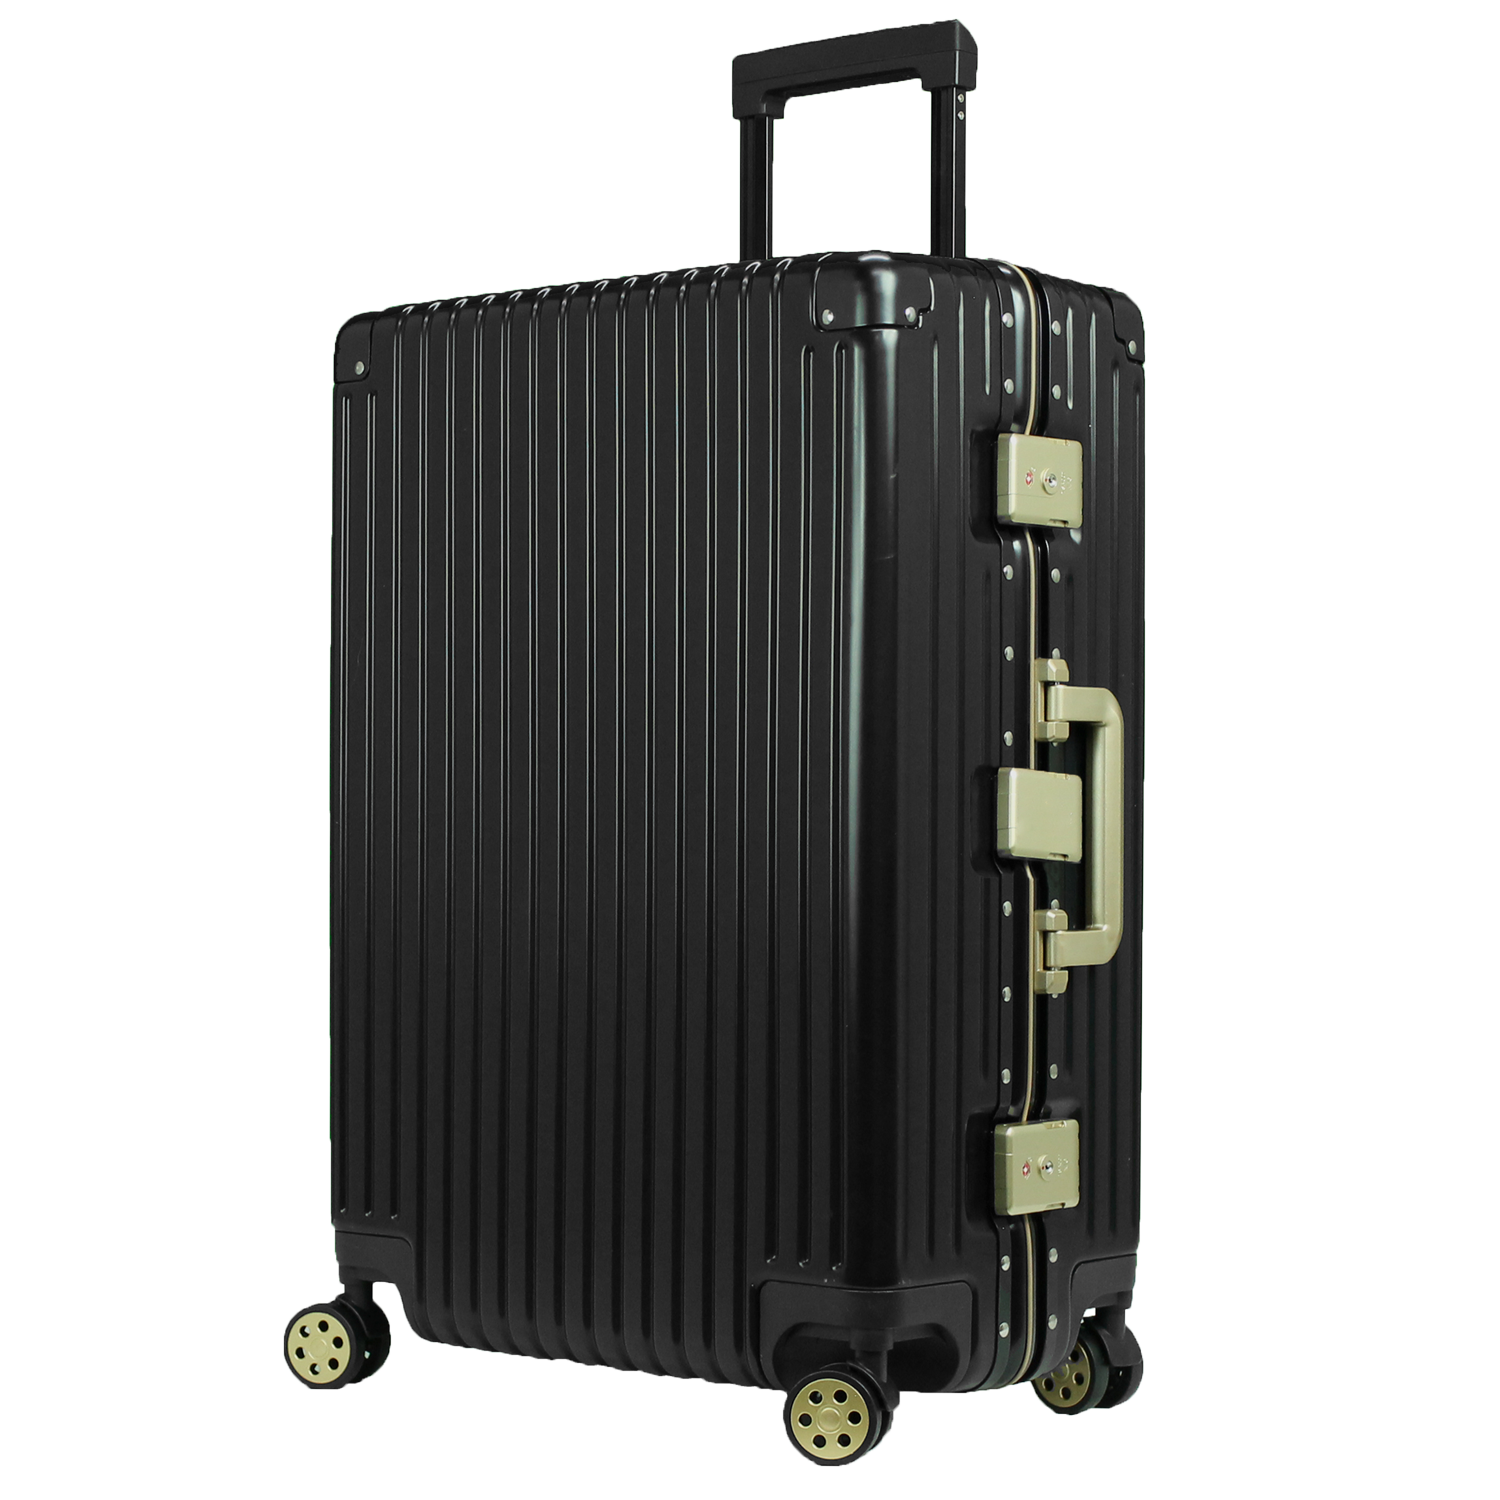 スーツケース Lサイズ キャリーケース 日本企業企画 送料無料  大型 かわいい おしゃれ ハードケ...